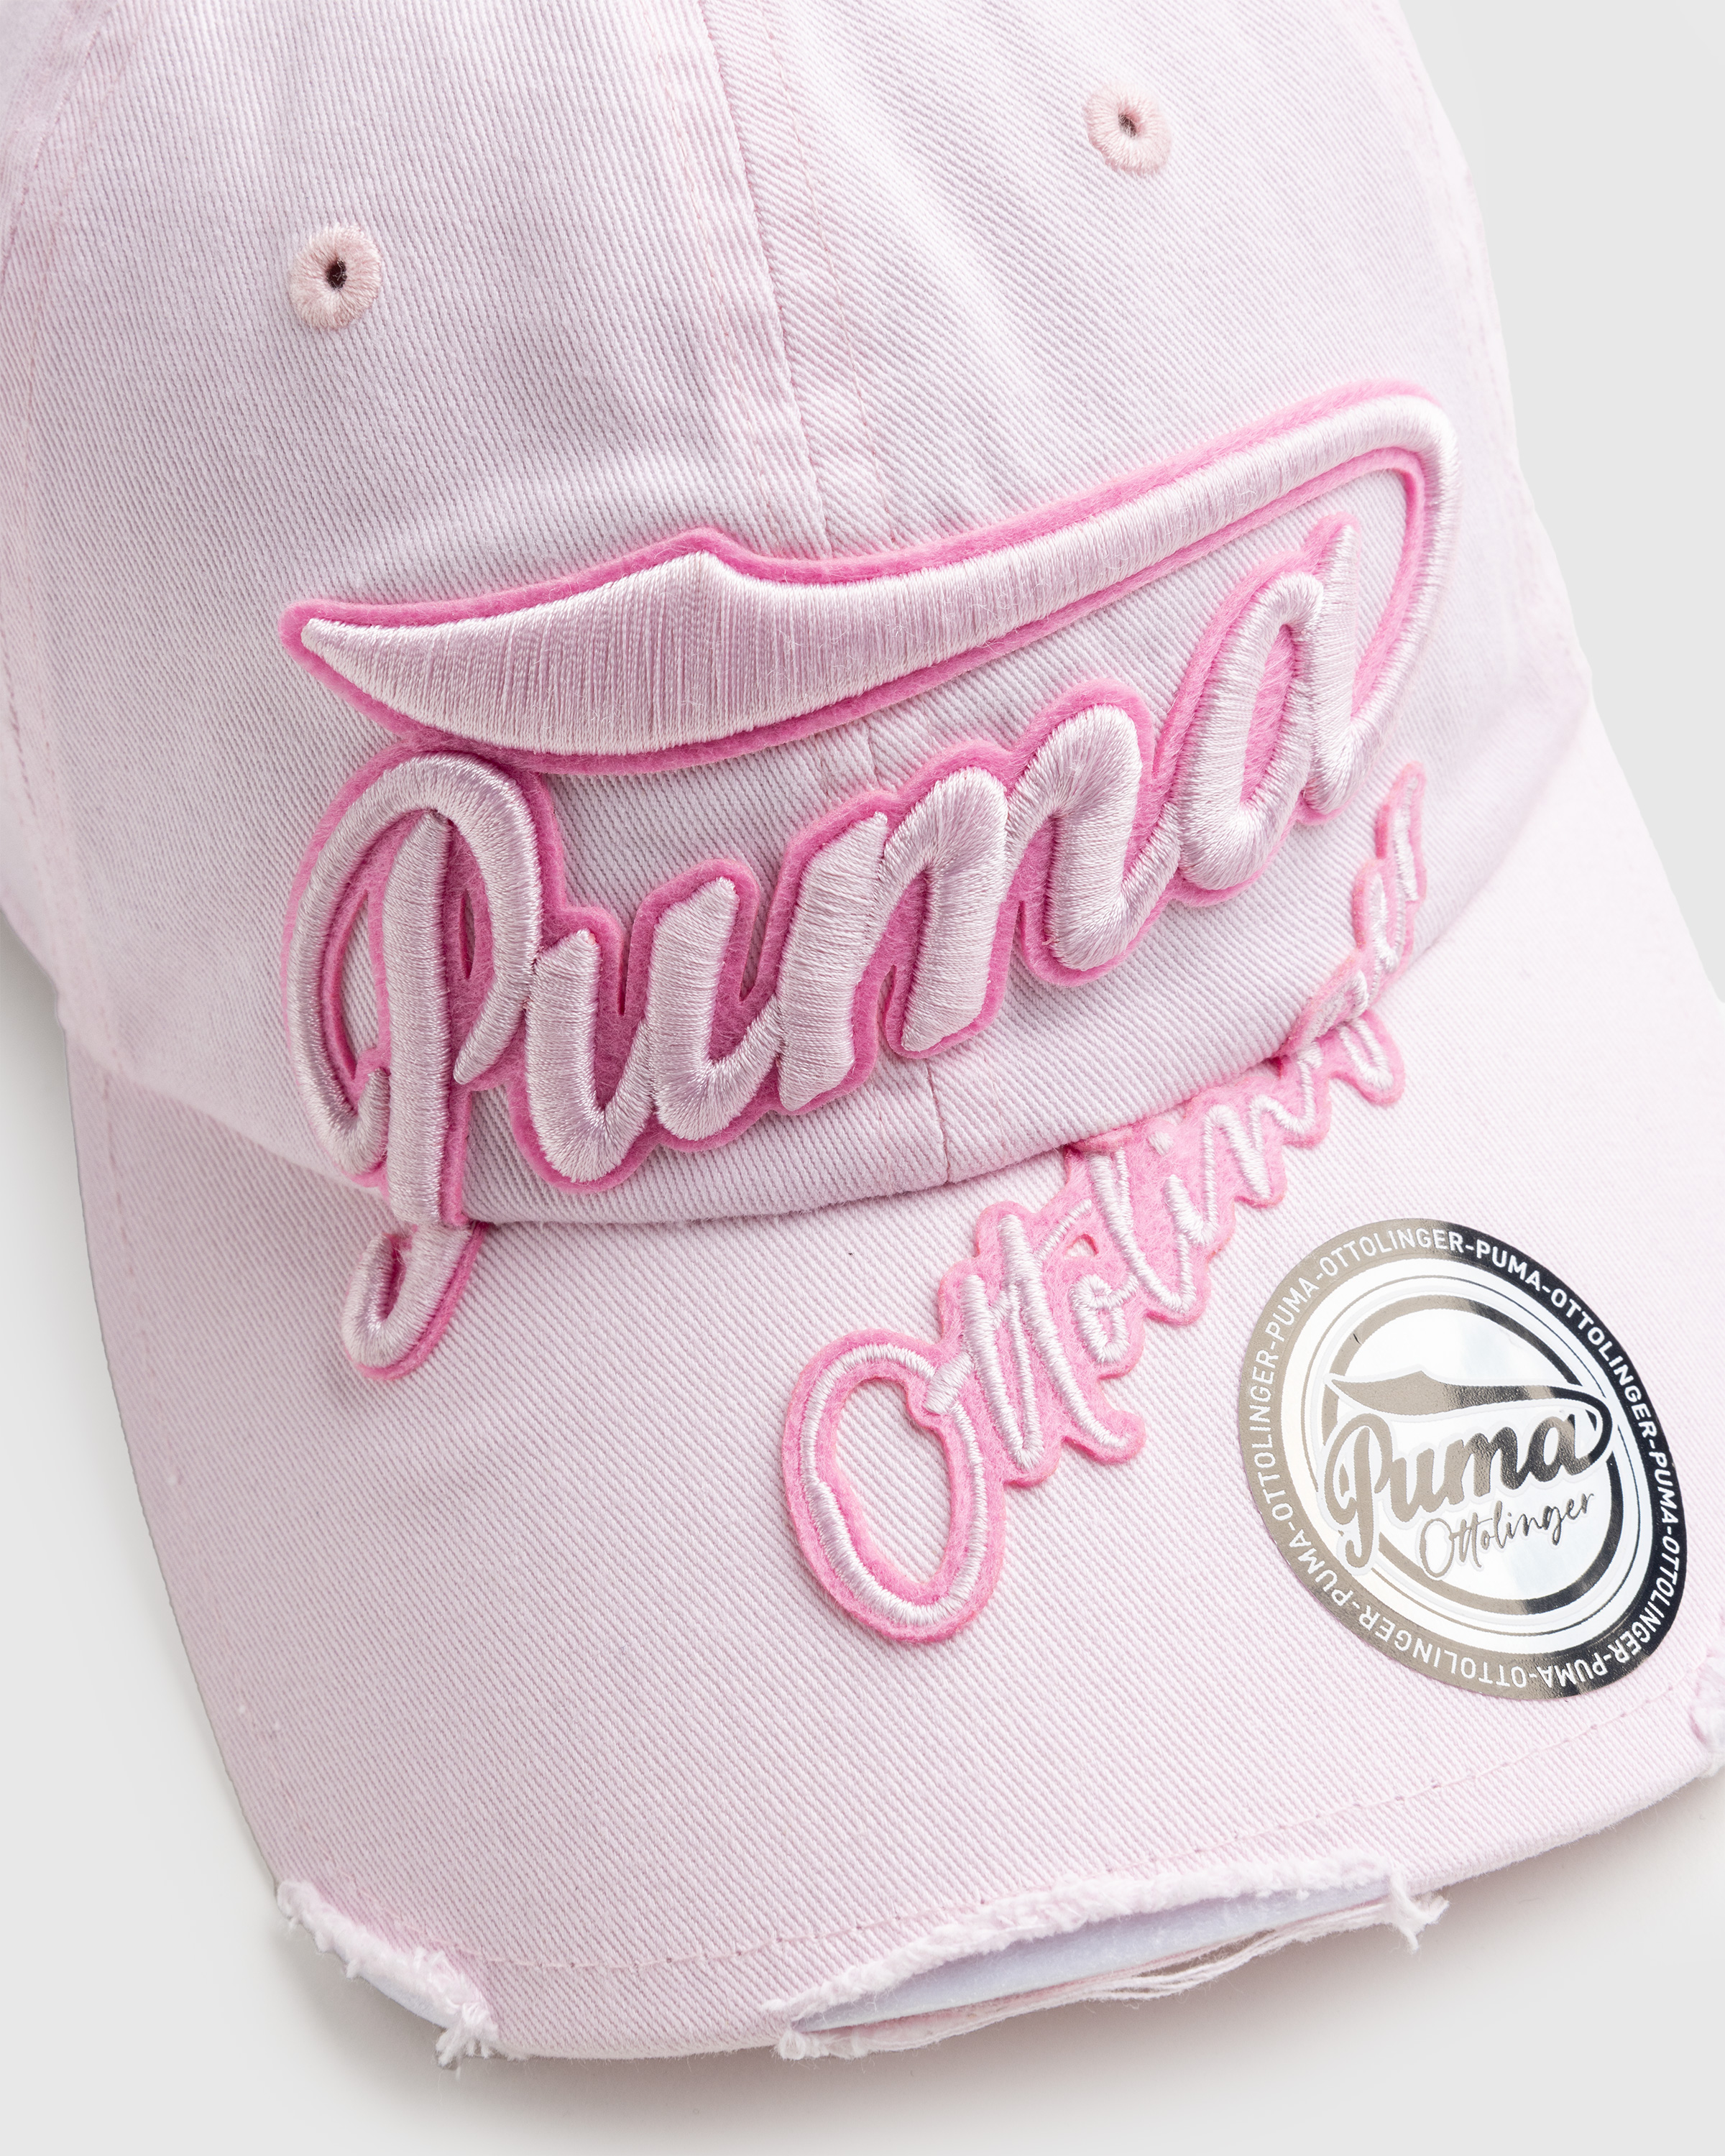 Puma x Ottolinger – Cap Pink - Caps - Pink - Image 5